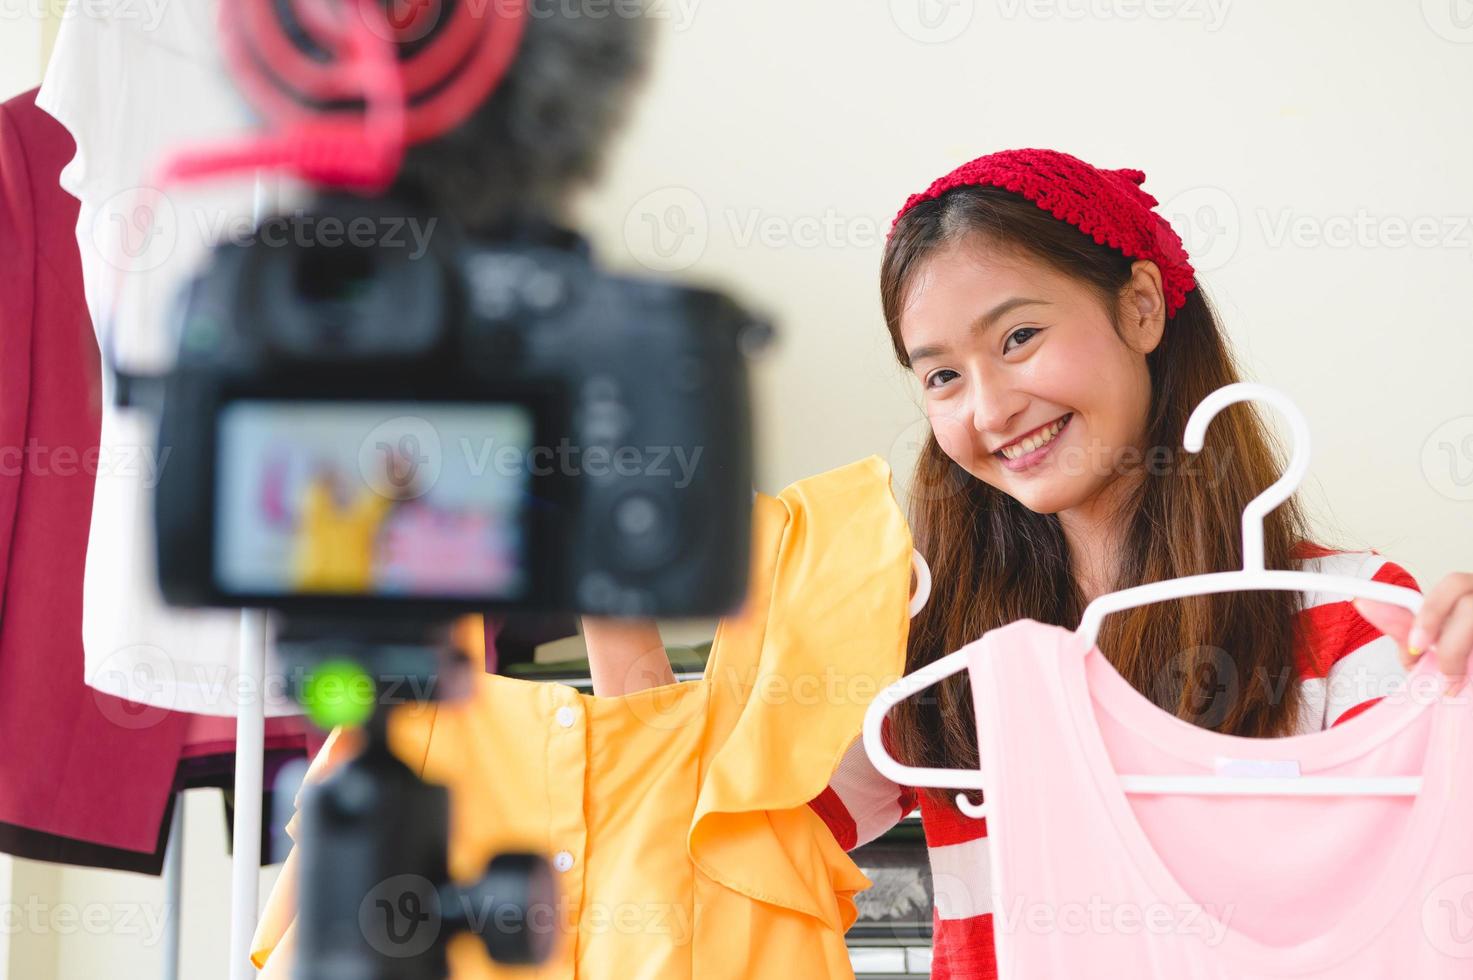 entrevista de blogger de beleza asiática vlogger com câmera digital dslr foto